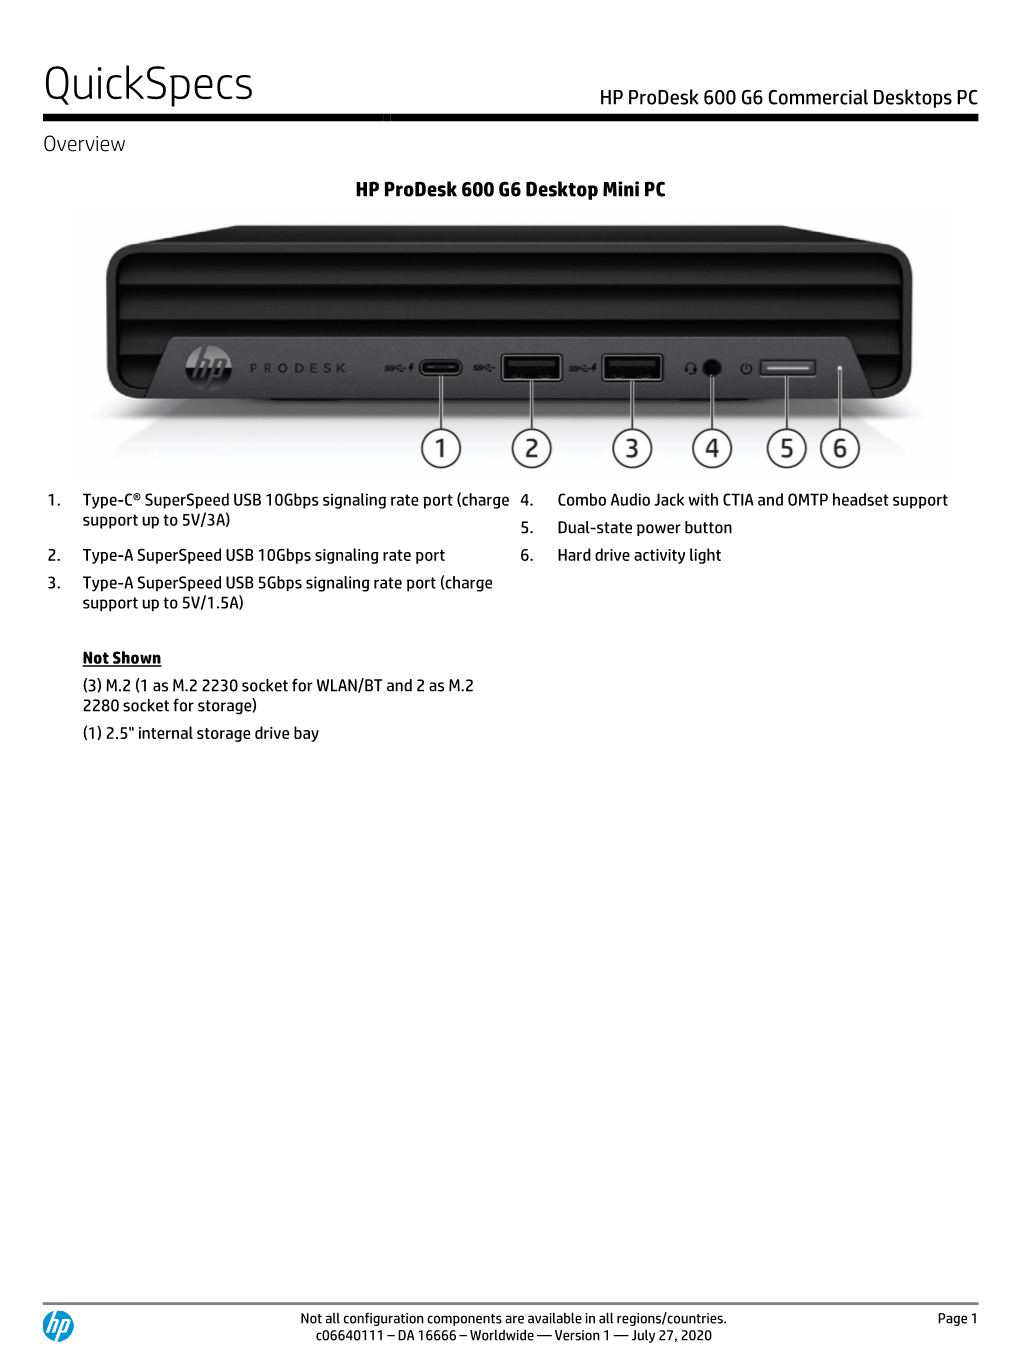 HP Prodesk 600 G6 Commercial Desktops PC